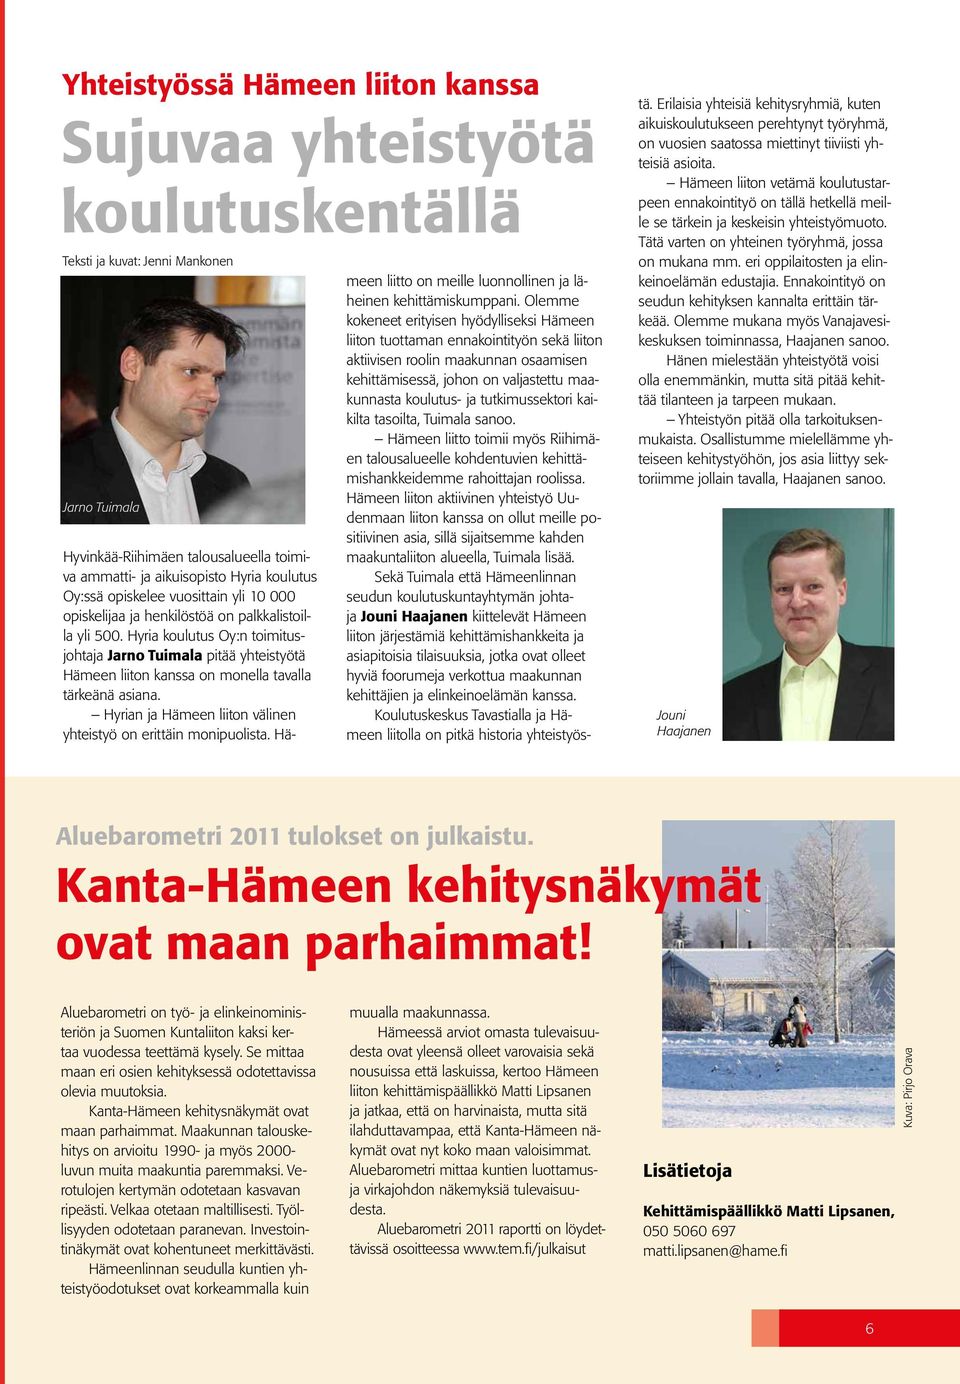 Hyria koulutus Oy:n toimitusjohtaja Jarno Tuimala pitää yhteistyötä Hämeen liiton kanssa on monella tavalla tärkeänä asiana. Hyrian ja Hämeen liiton välinen yhteistyö on erittäin monipuolista.